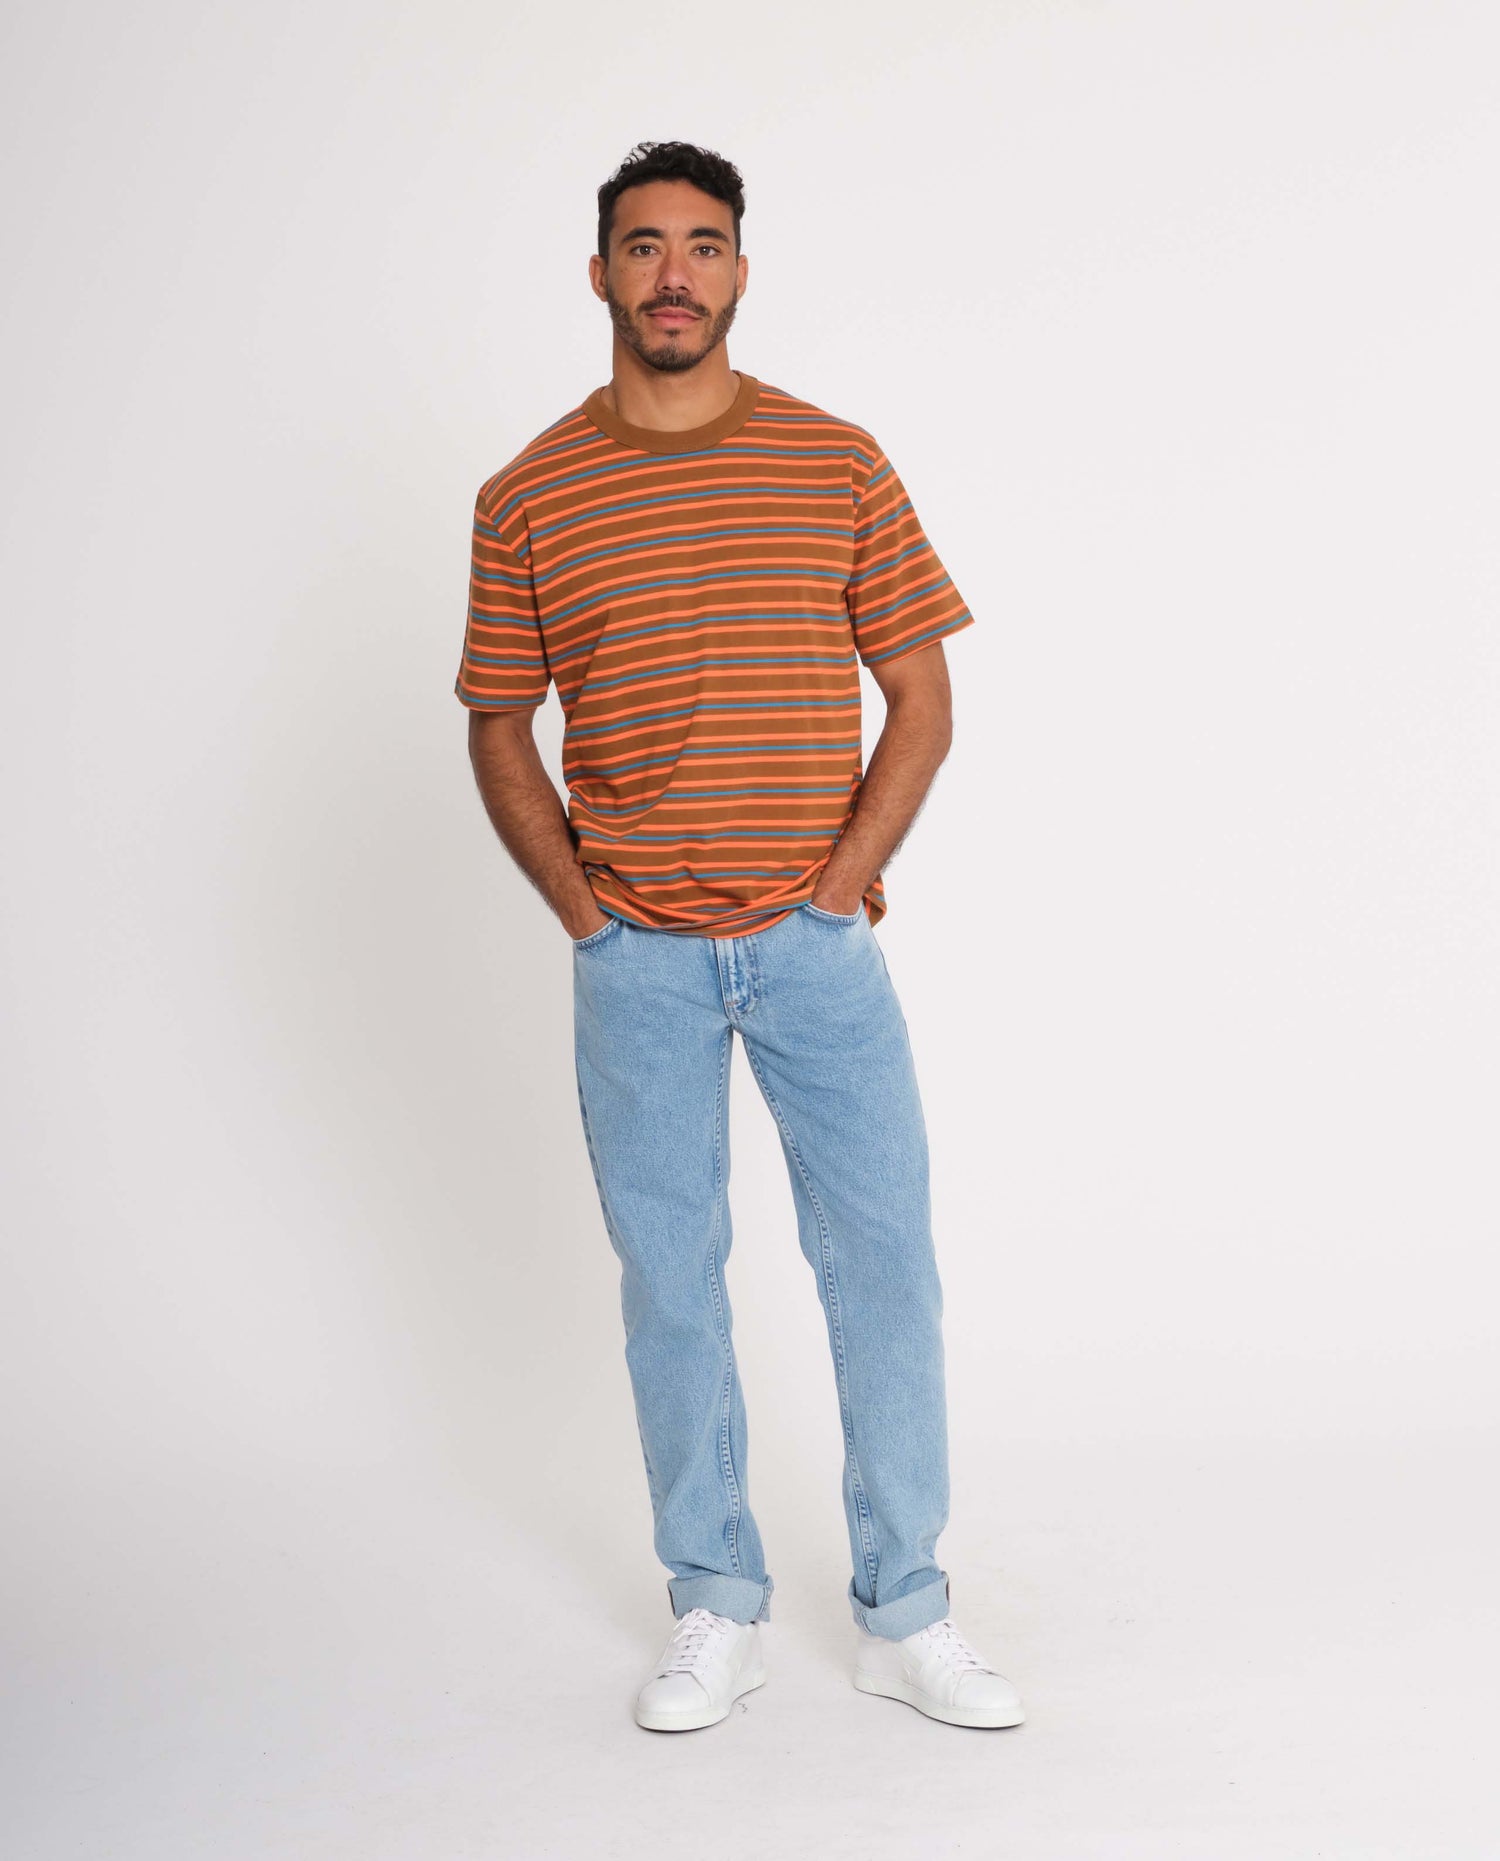 marché commun loreak mendian homme t-shirt coton manches courtes rayures orange bleu